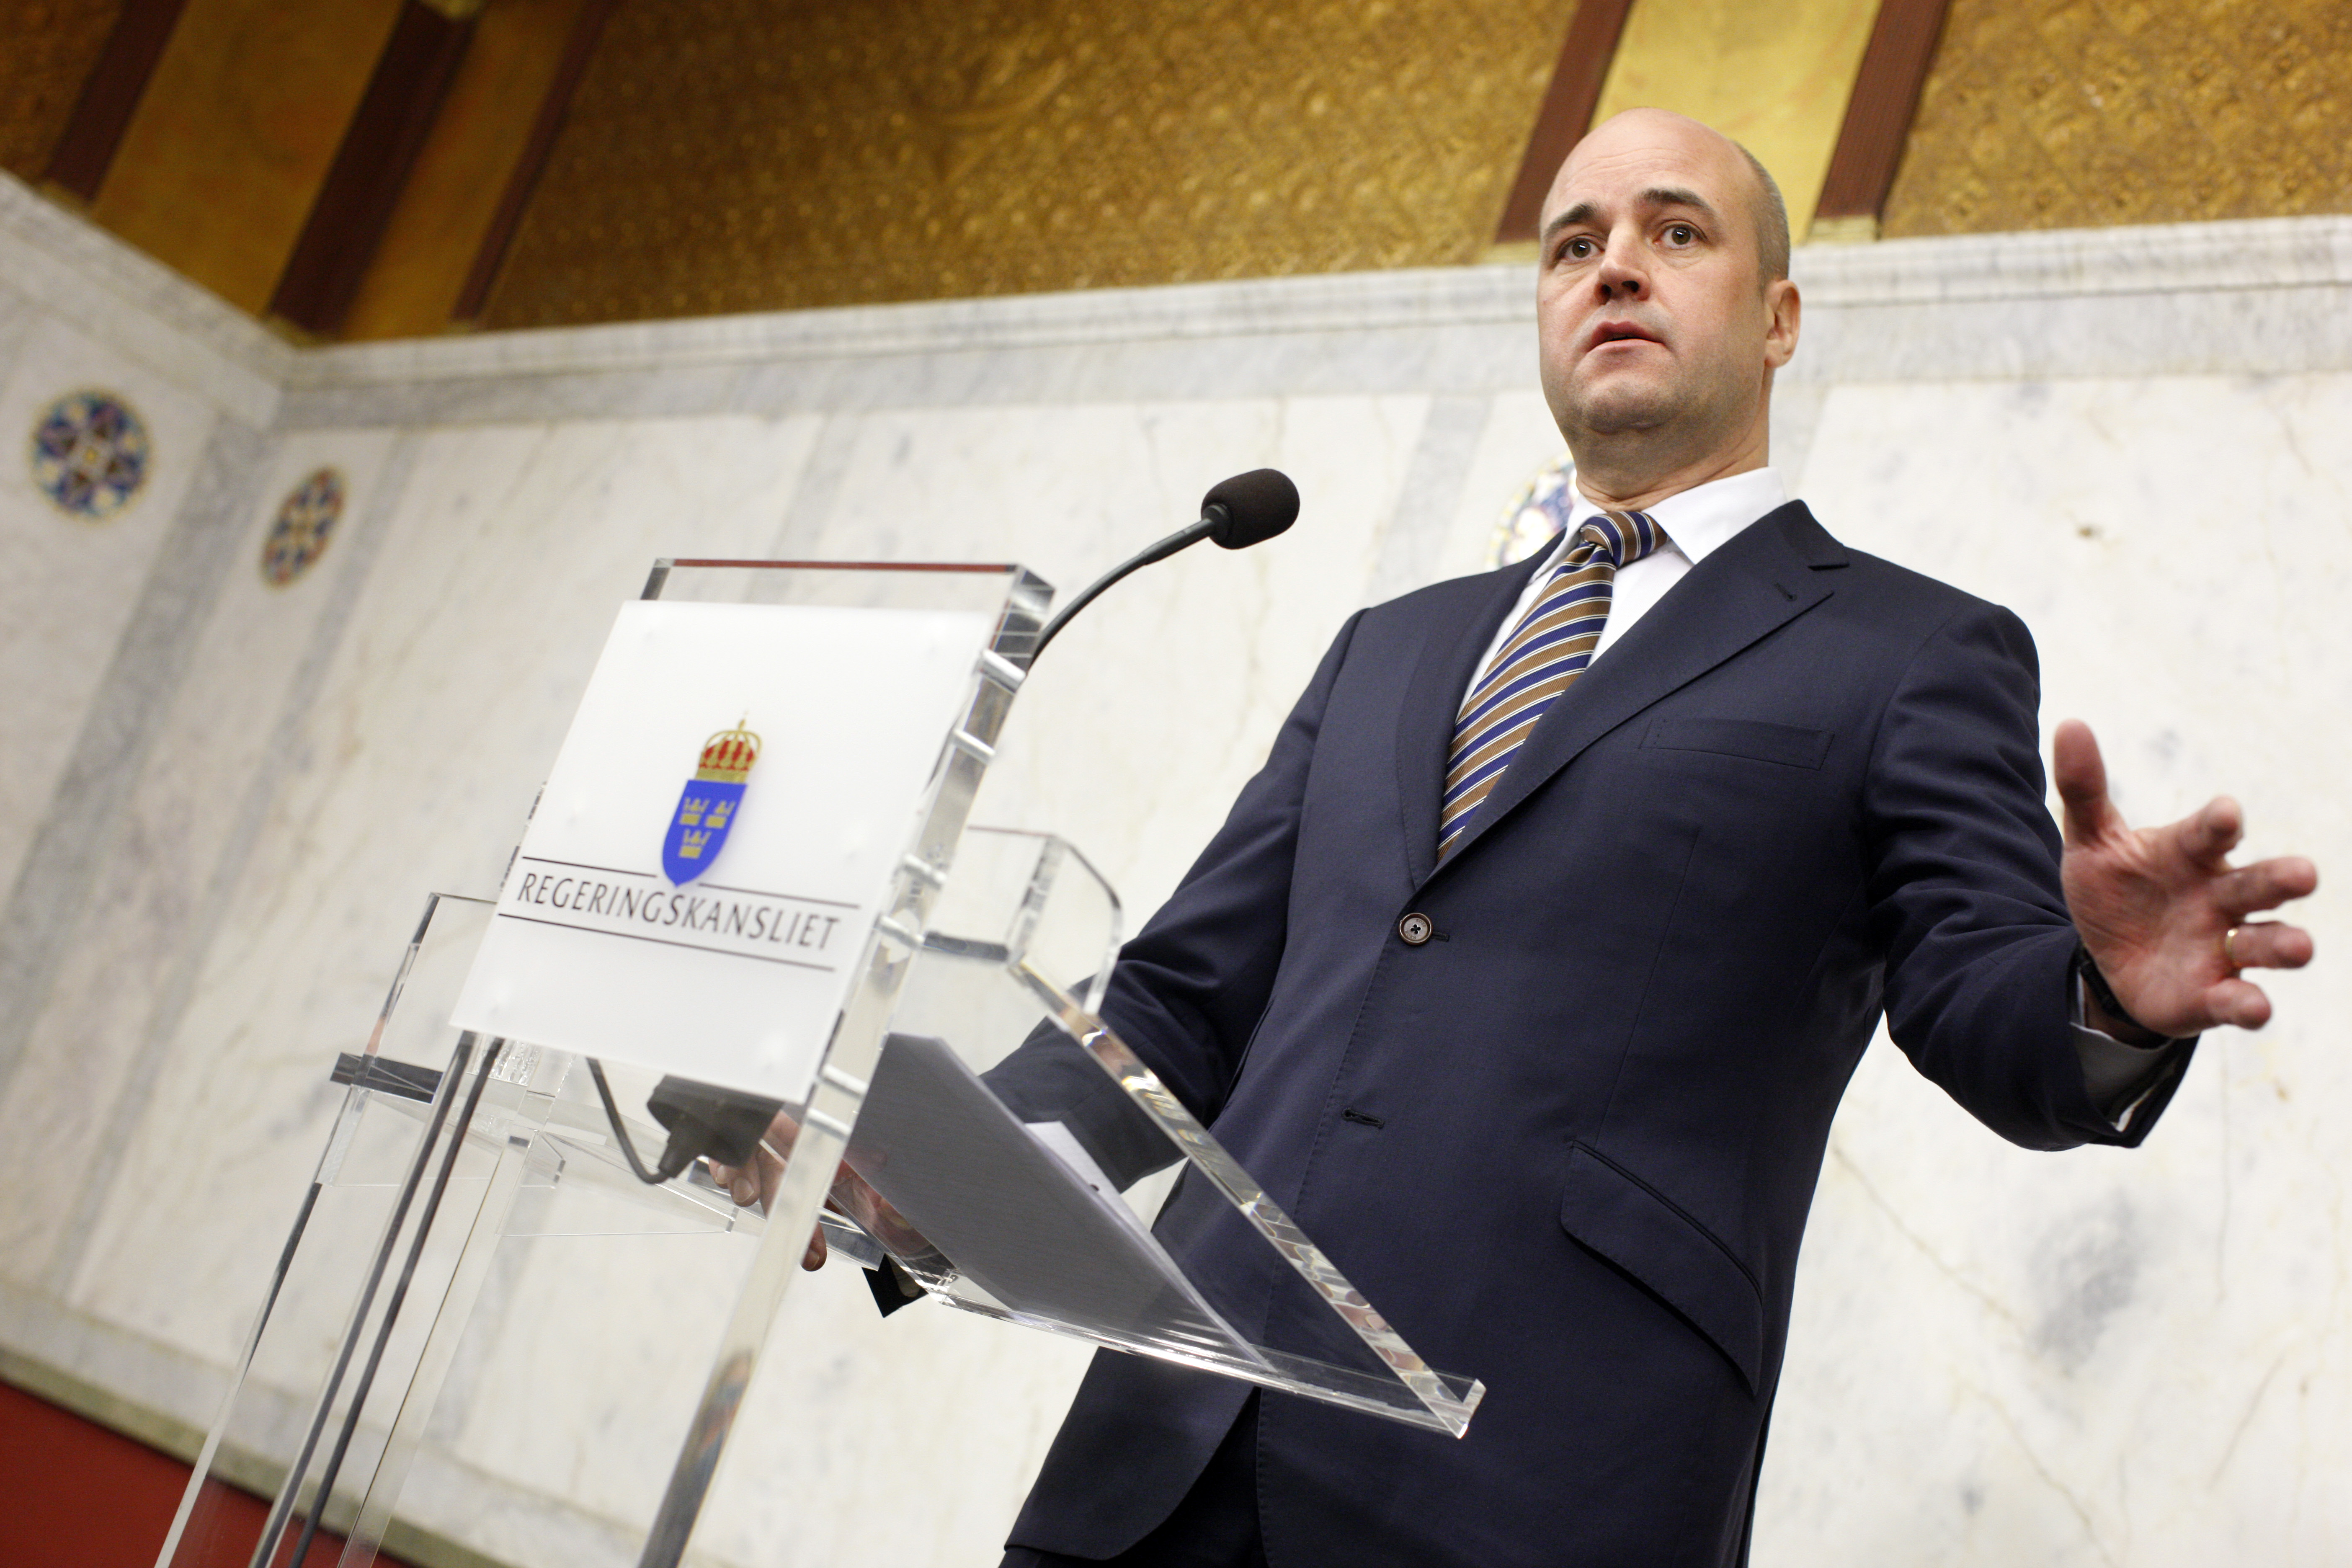 Förhandlingar, Ministerpost, Minister, Regering, Fredrik Reinfeldt